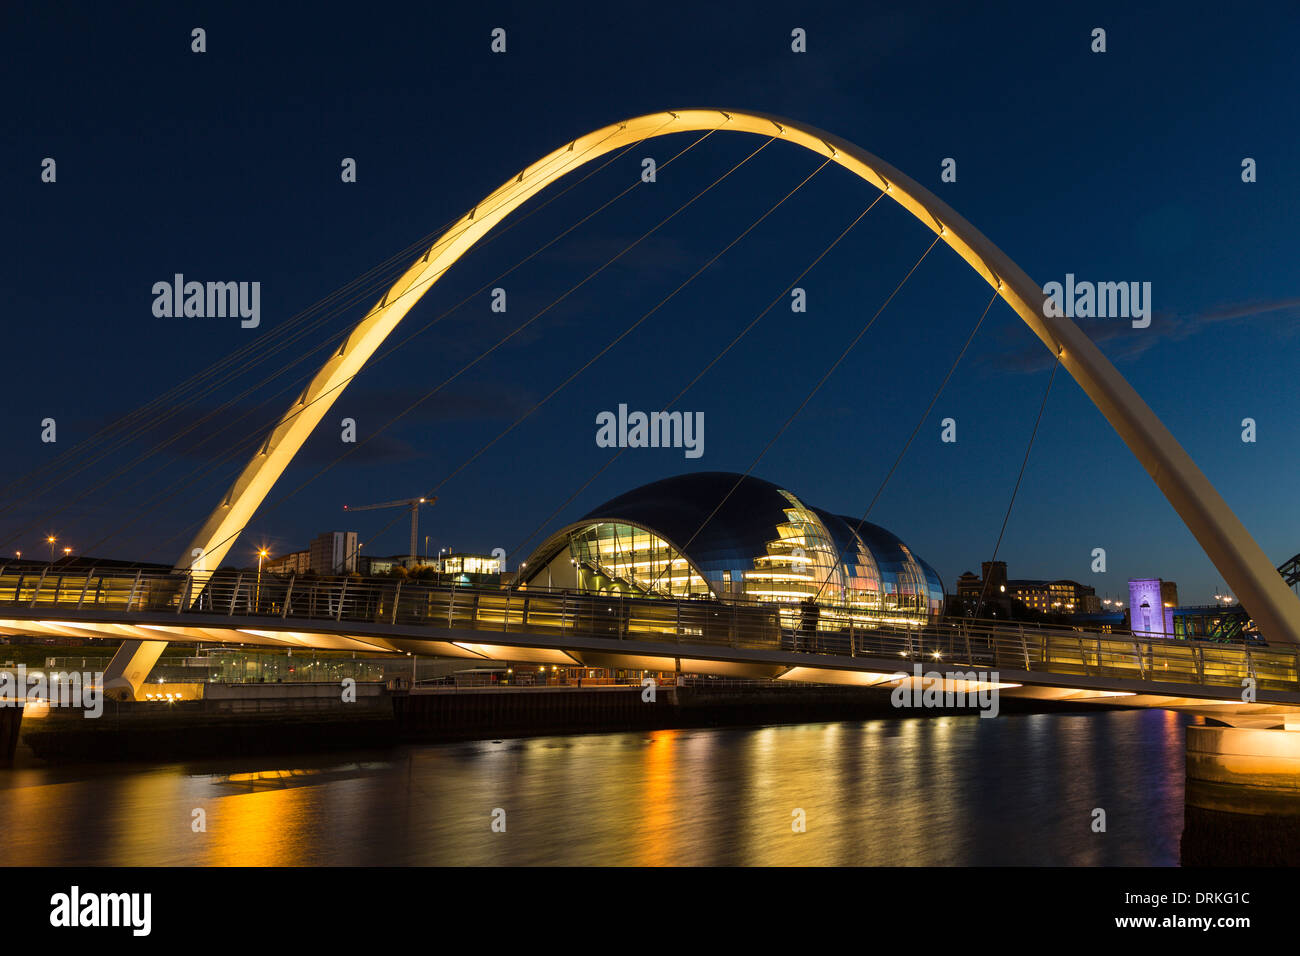 Gateshead Millennium Bridge and The Sage at dusk, Newcastle on Tyne, England Stock Photo